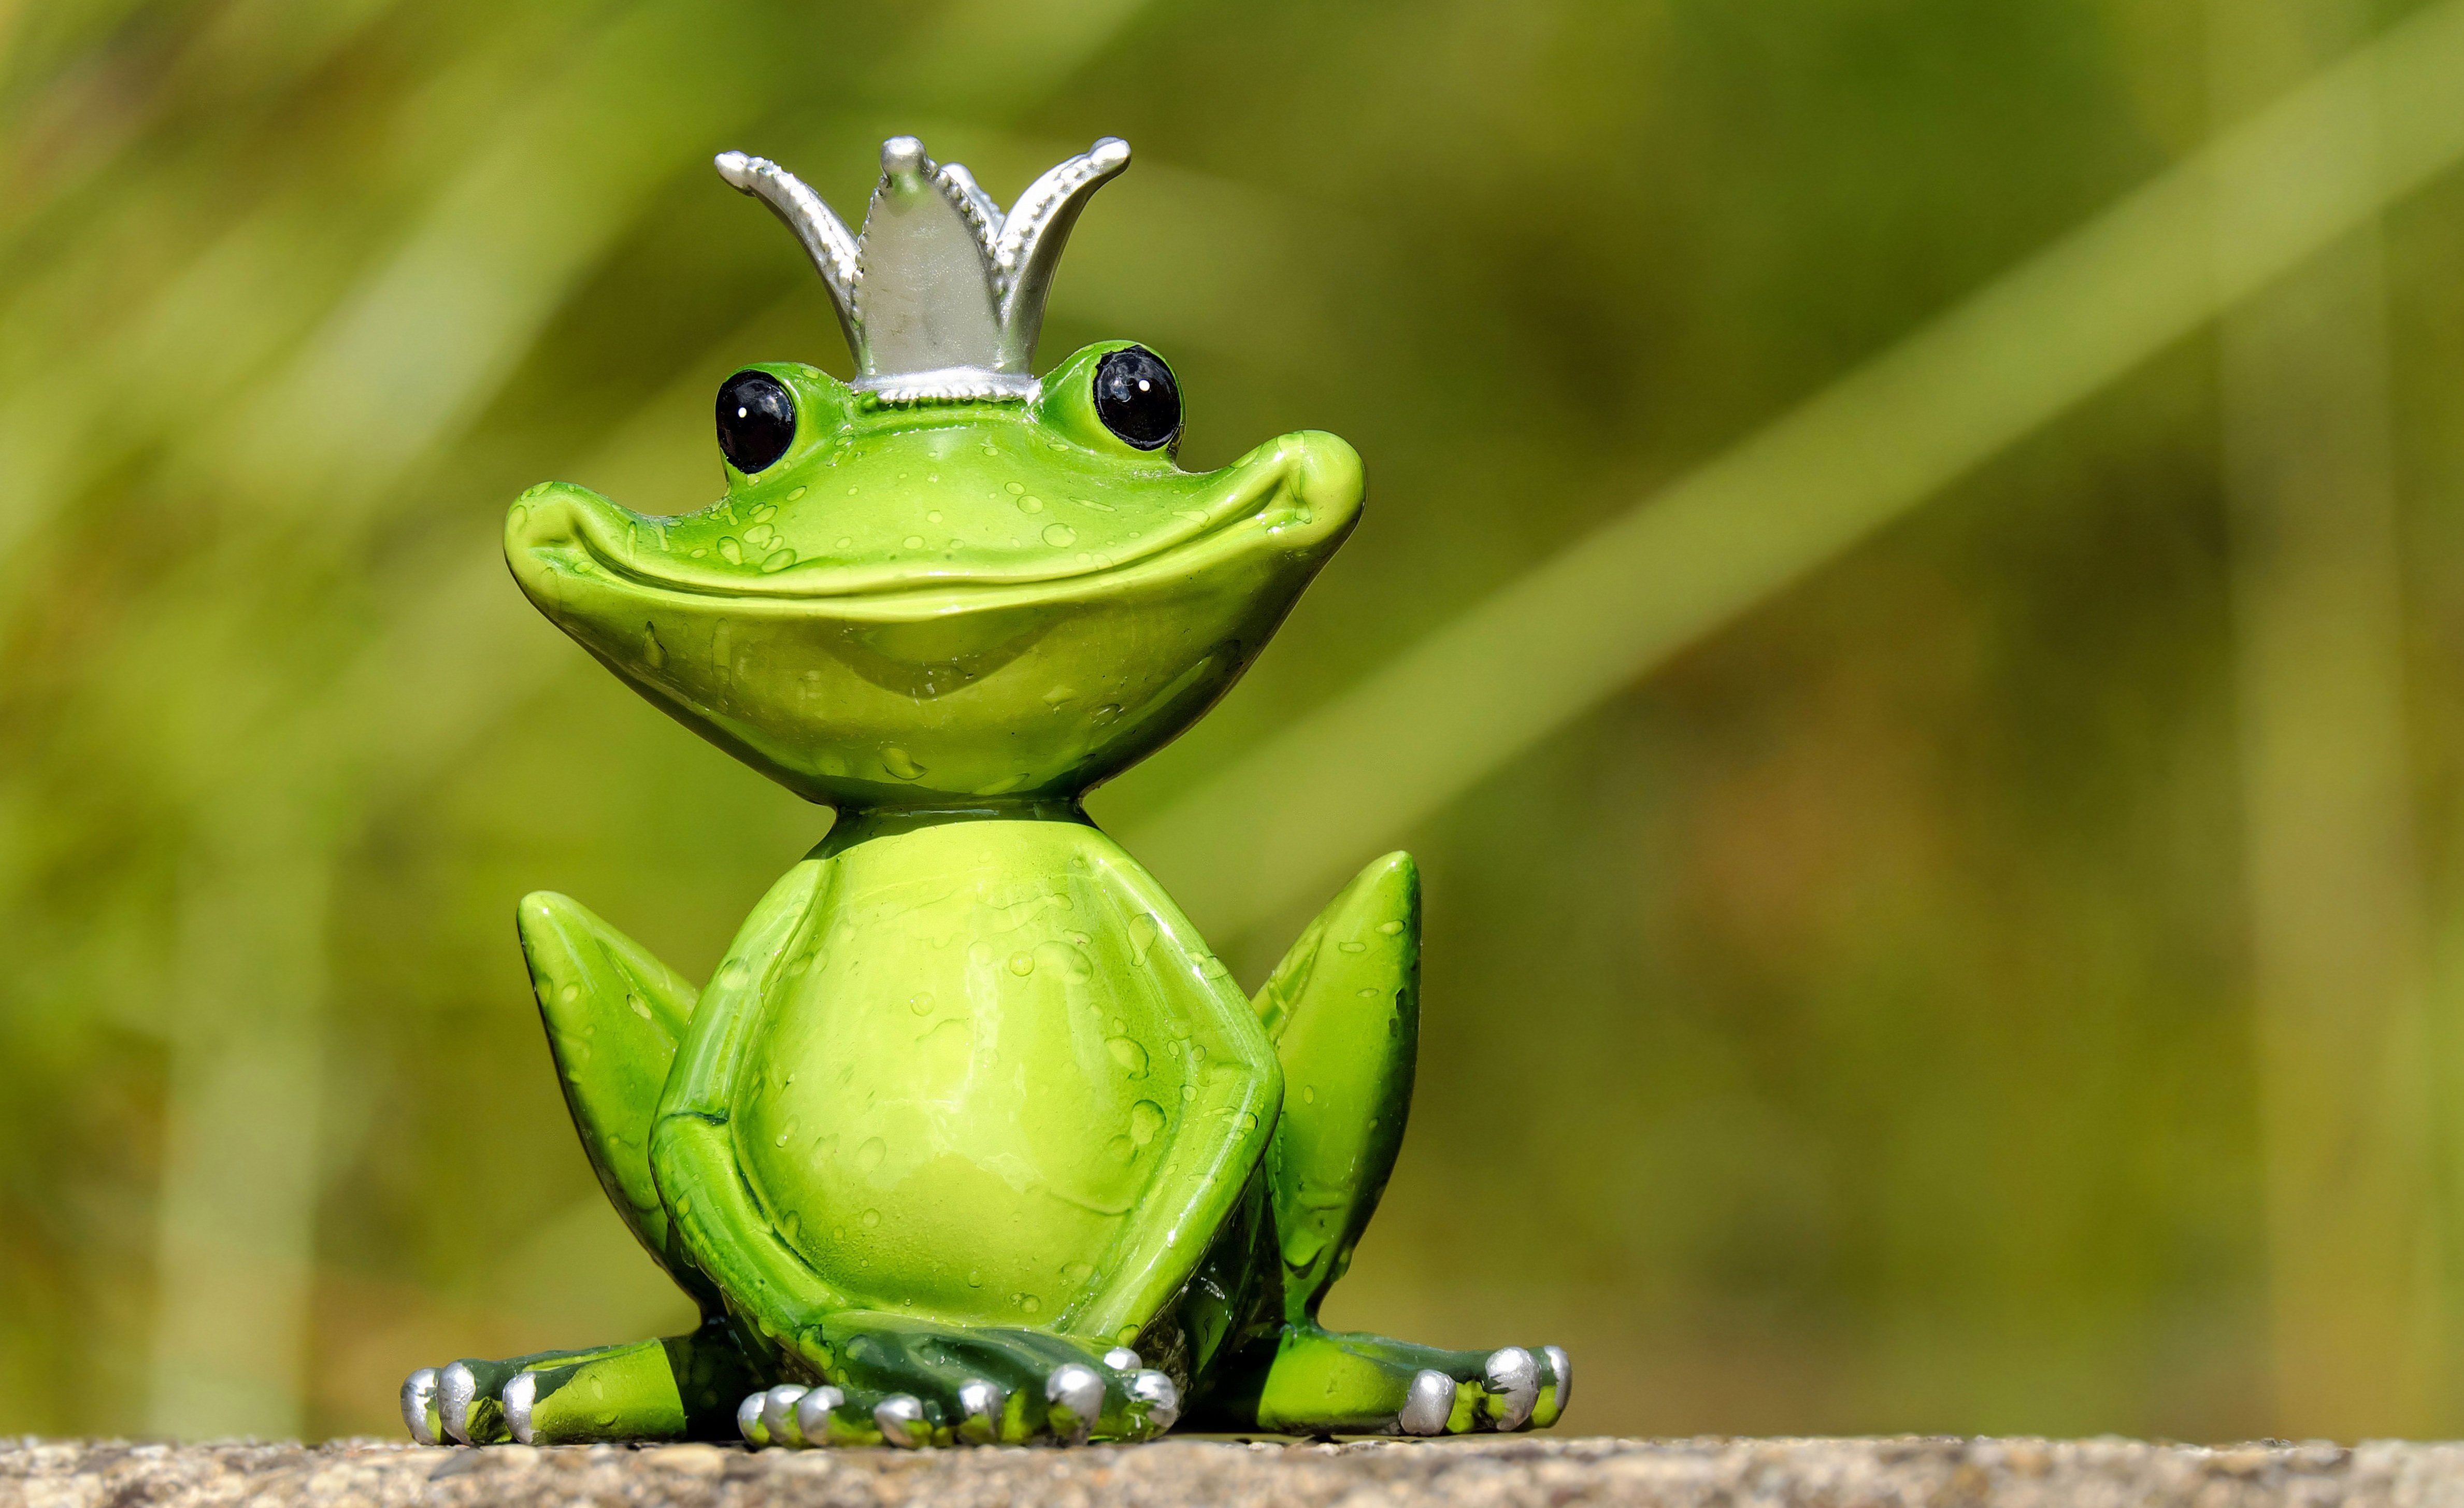 Elephant frog. 4 Лягухи. Нанолягушка. Милые лягушки. Лягушка улыбается.